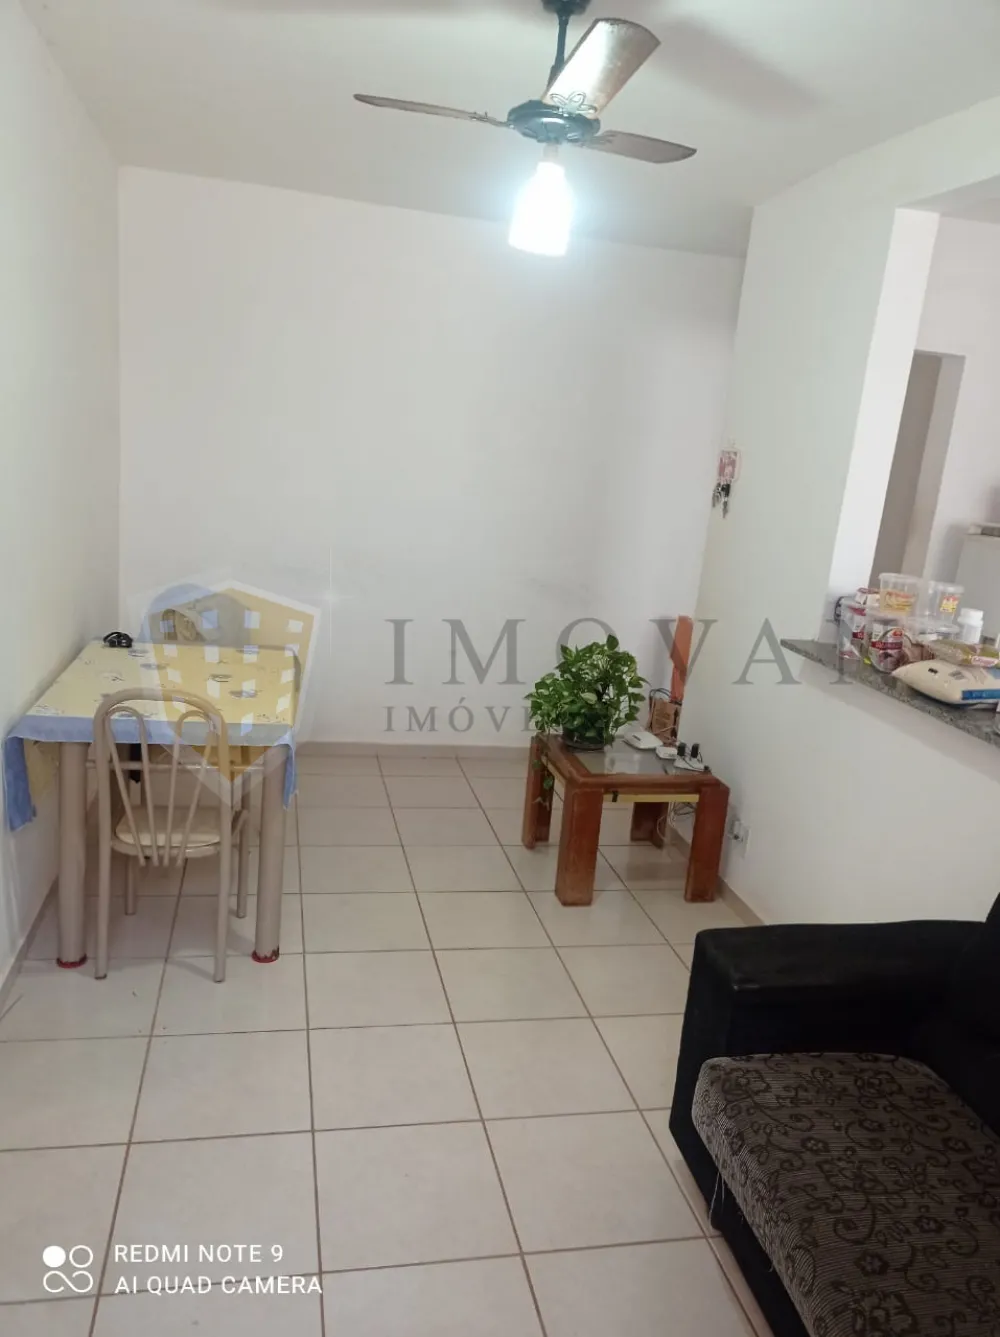 Comprar Apartamento / Padrão em Ribeirão Preto R$ 150.000,00 - Foto 3